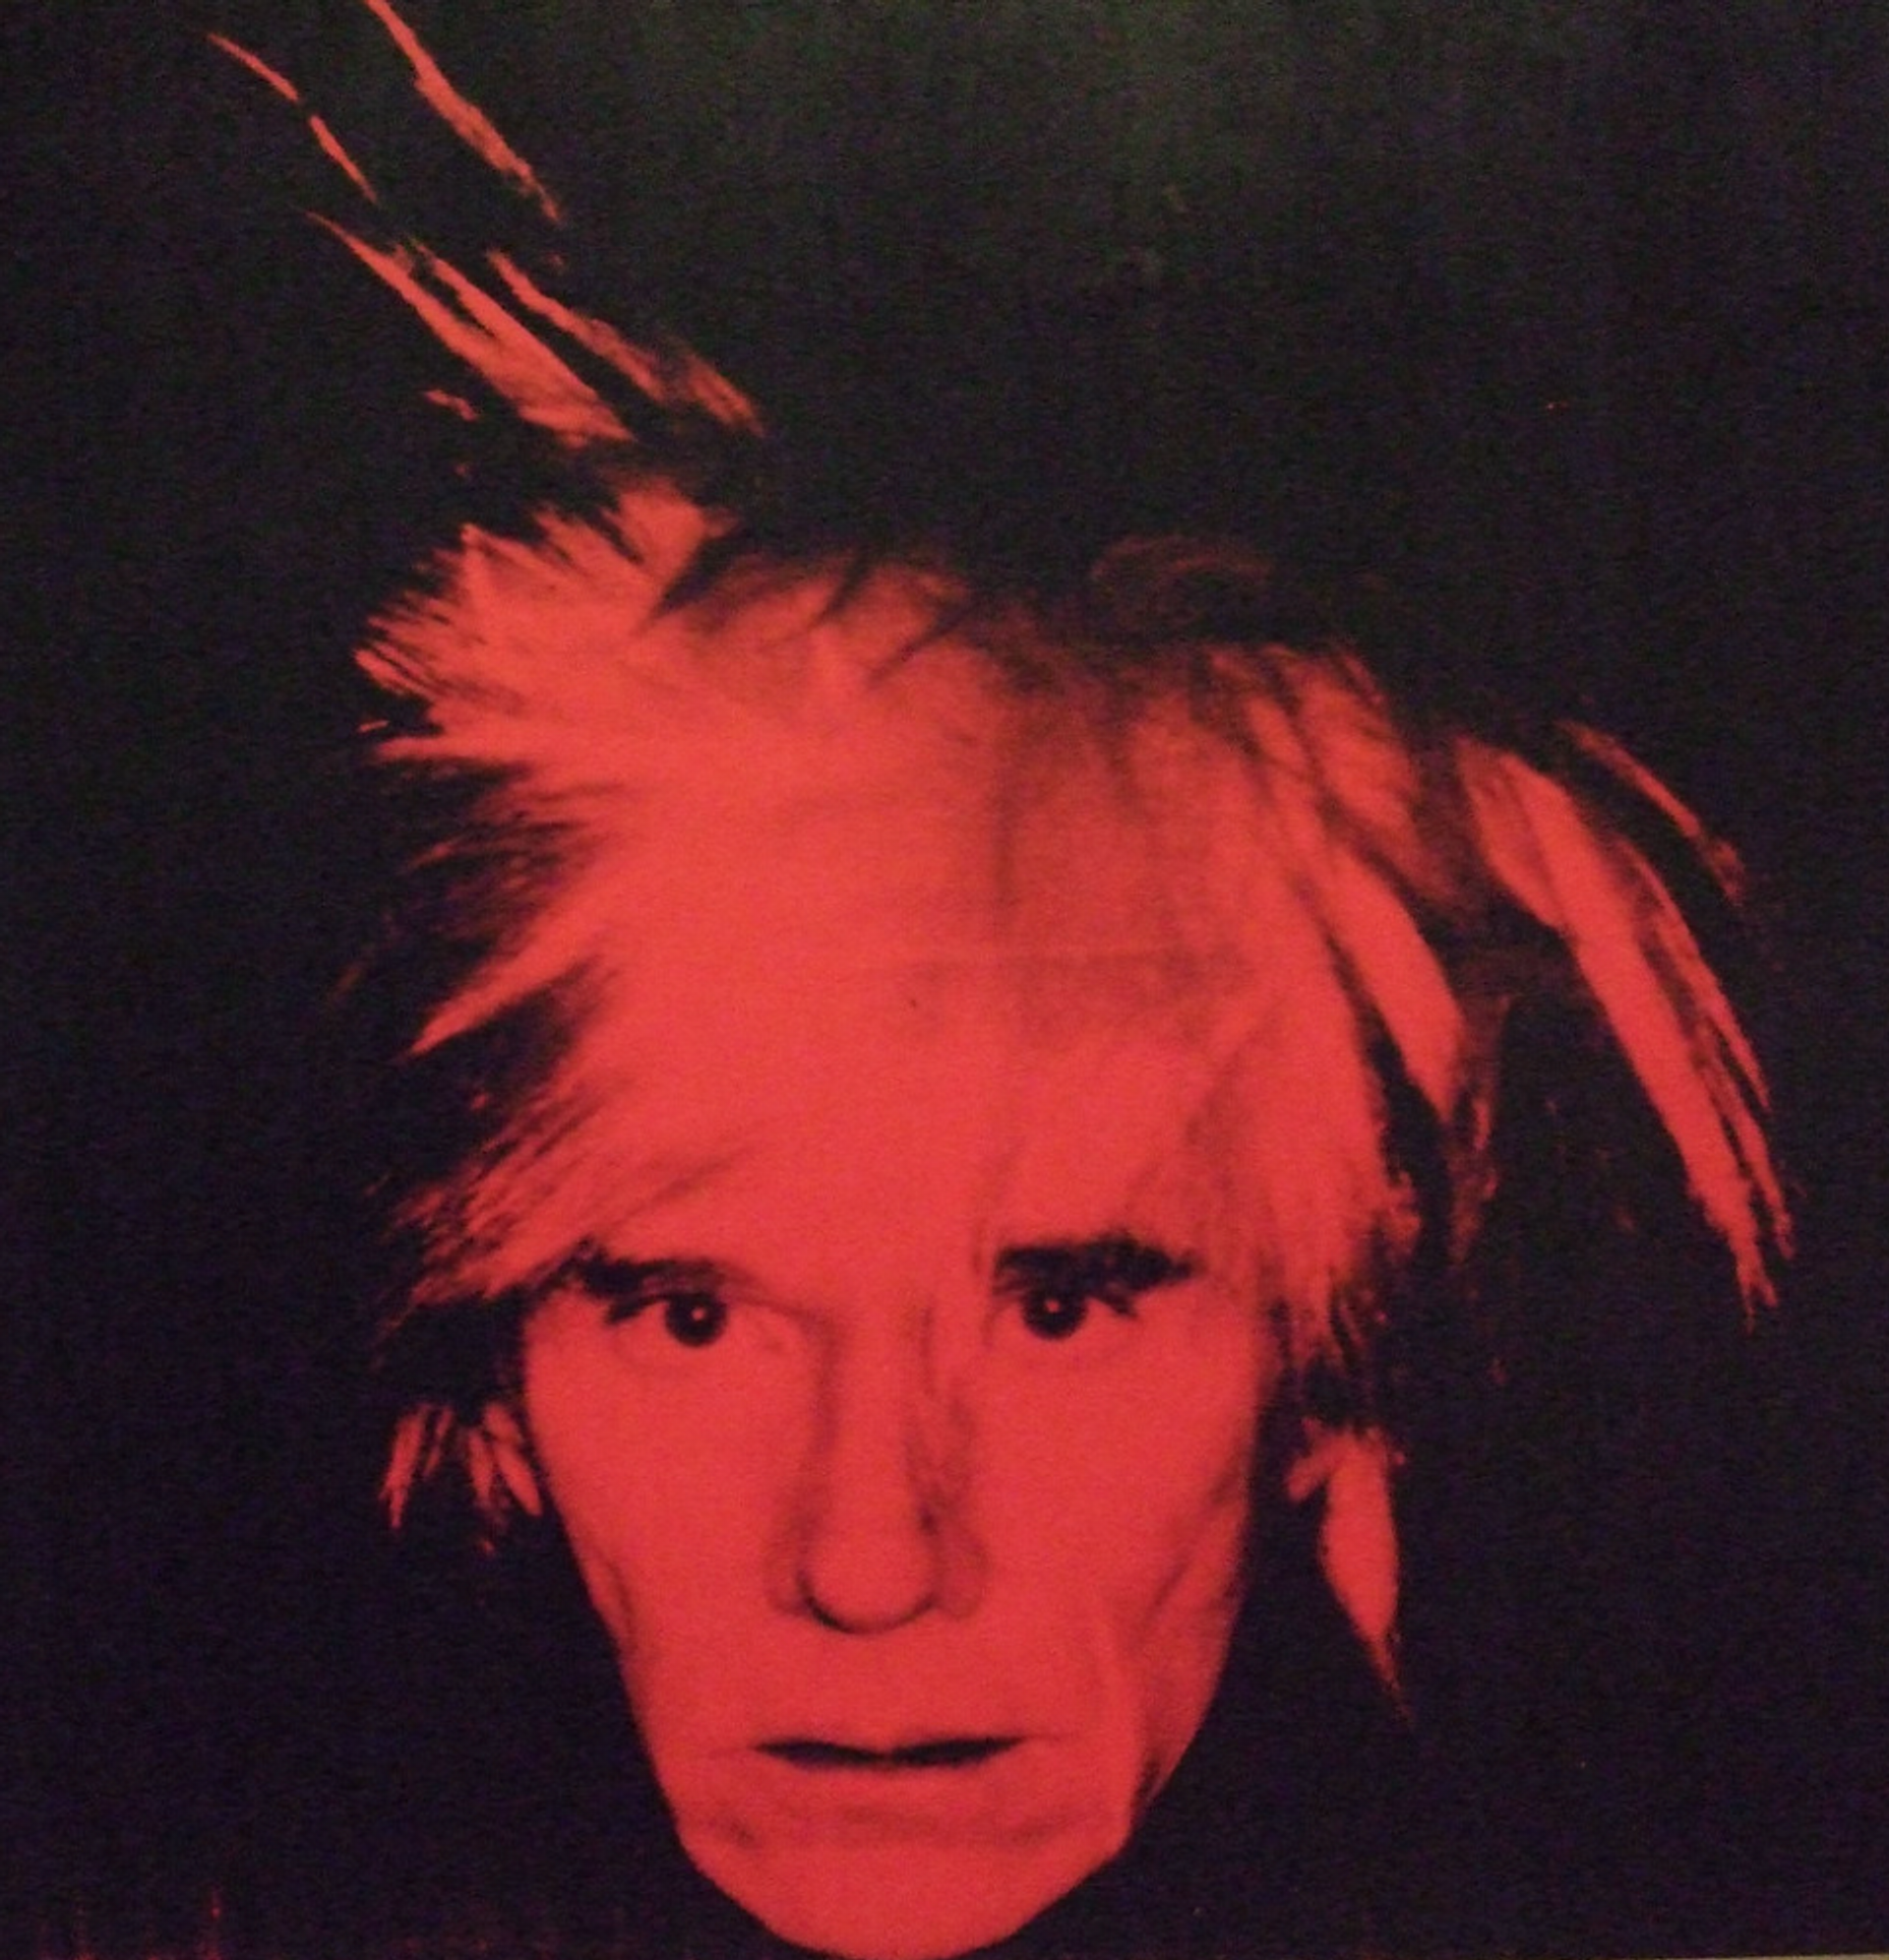 Self-Portrait (1986) by Andy Warhol - MyArtBroker